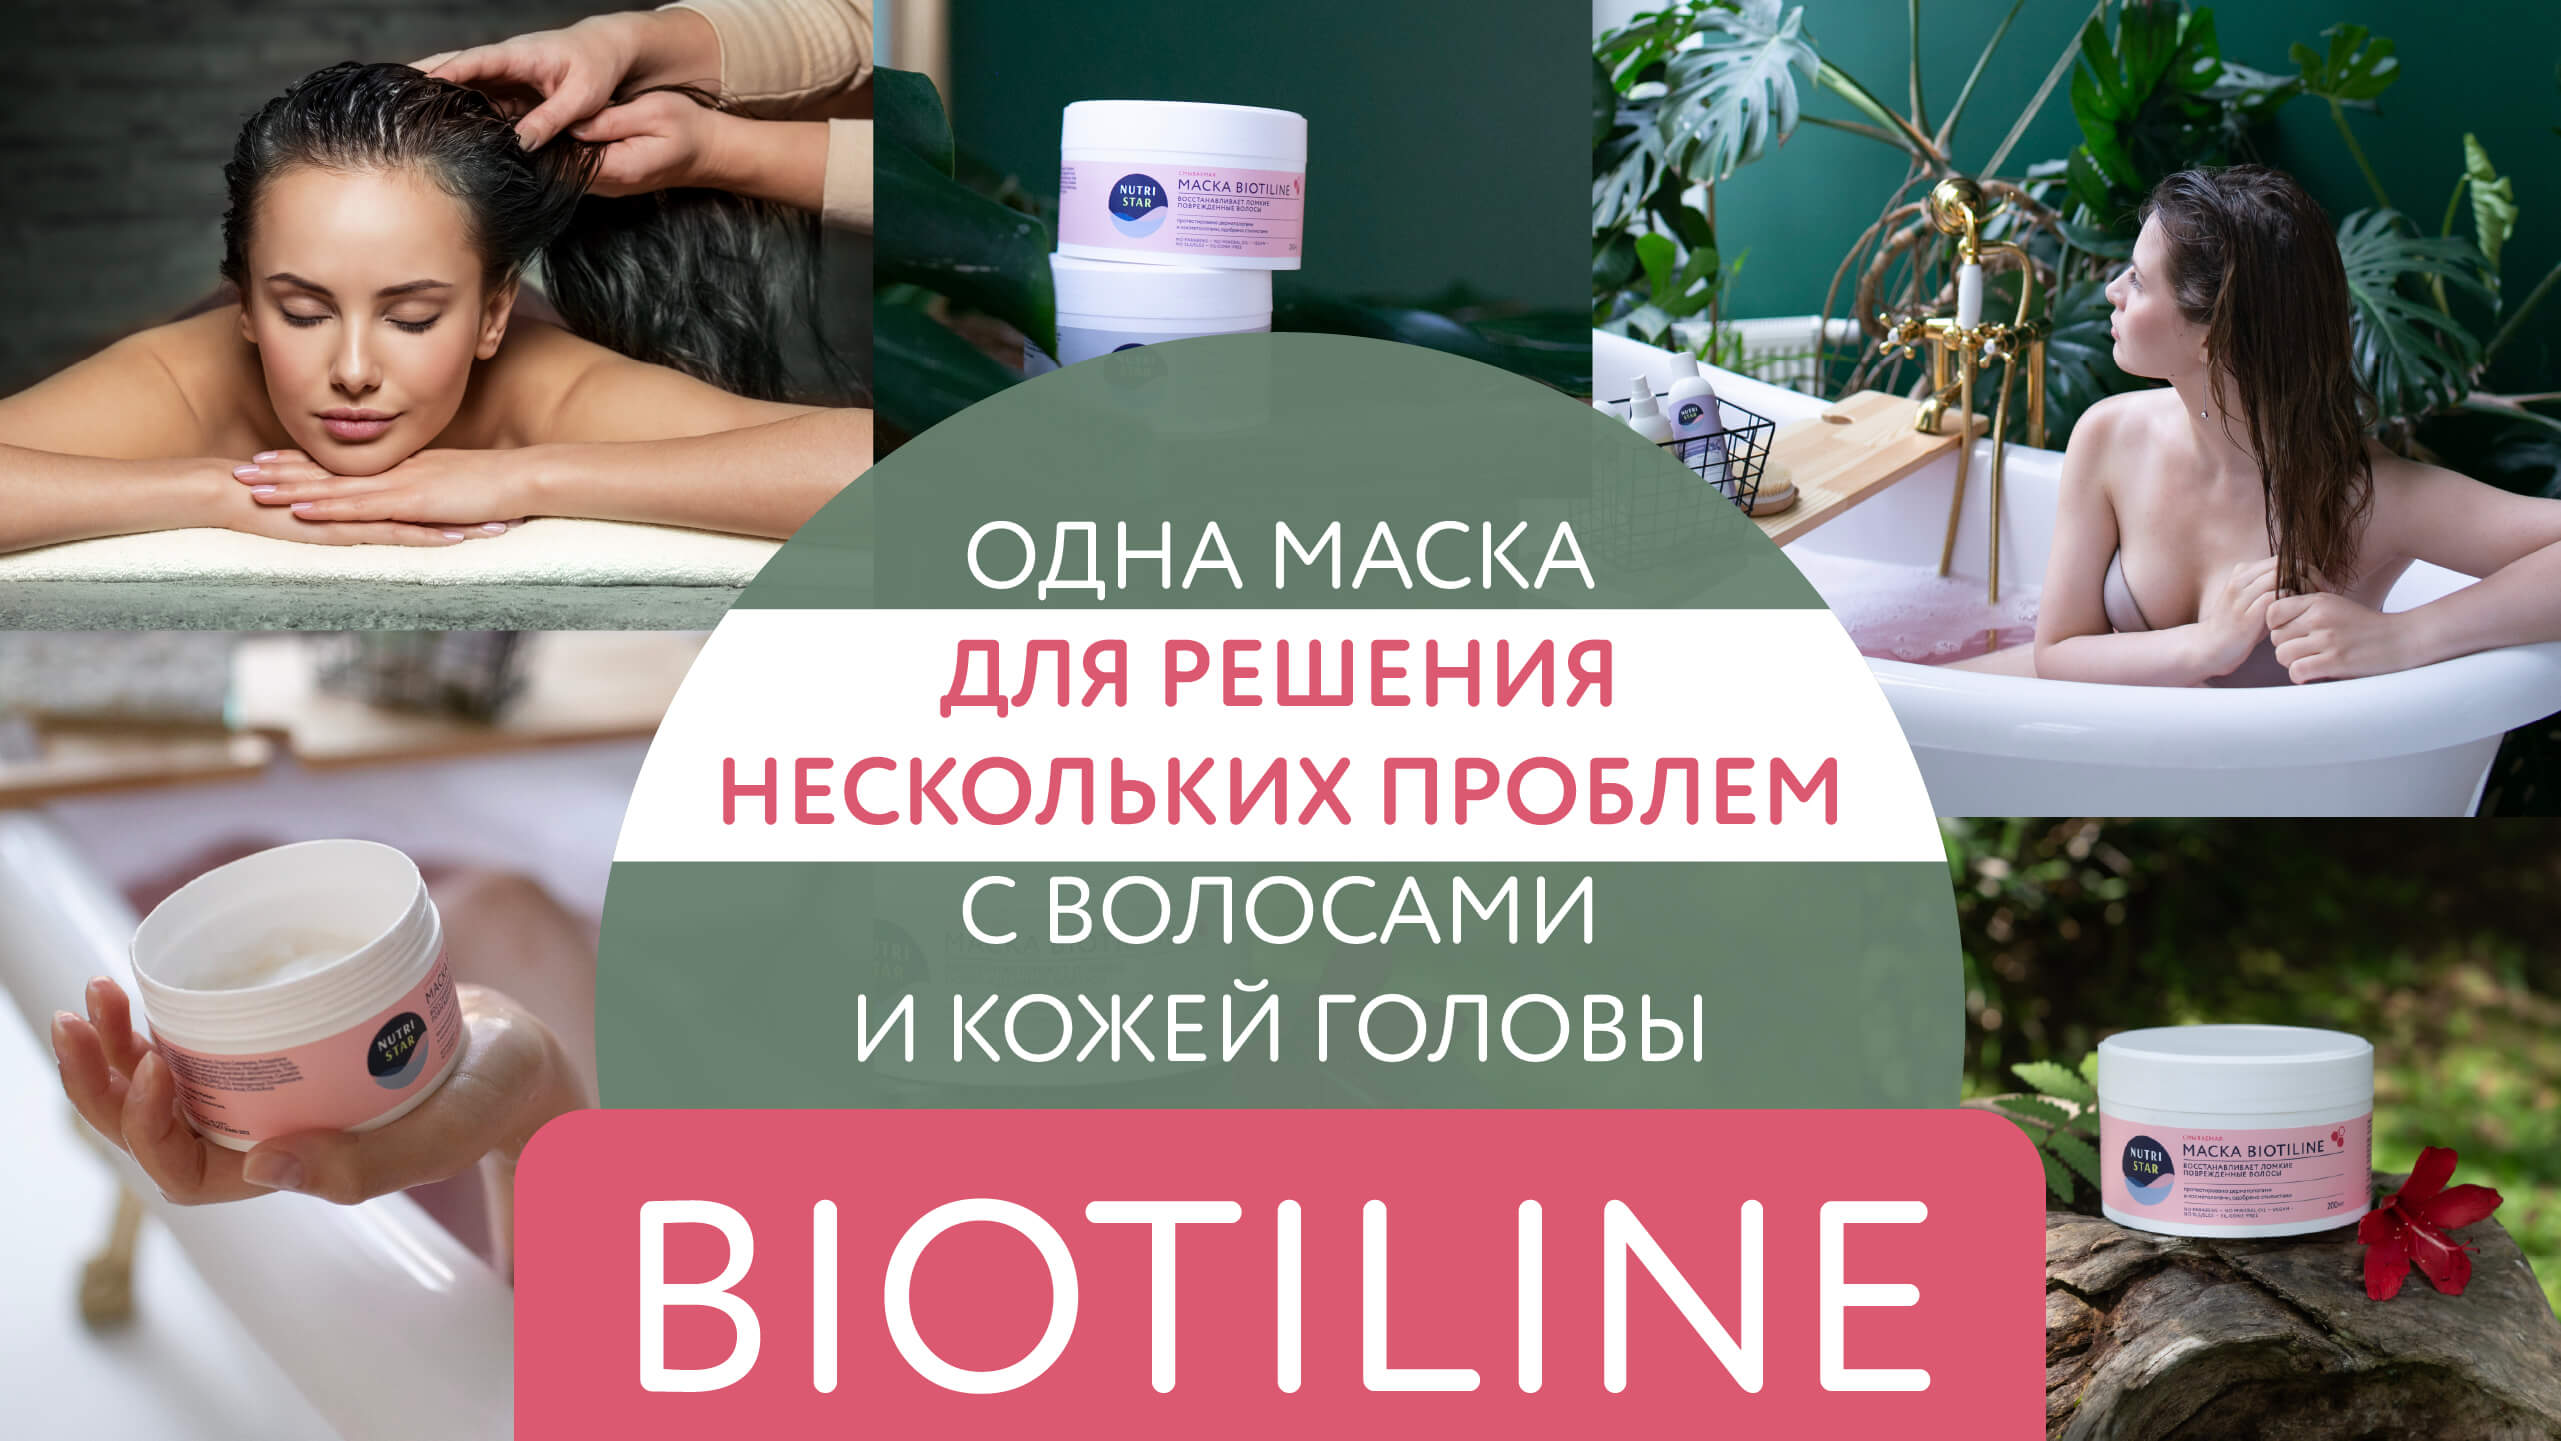 ? Biotiline – одна маска для решения нескольких проблем с волосами и кожей головы ??